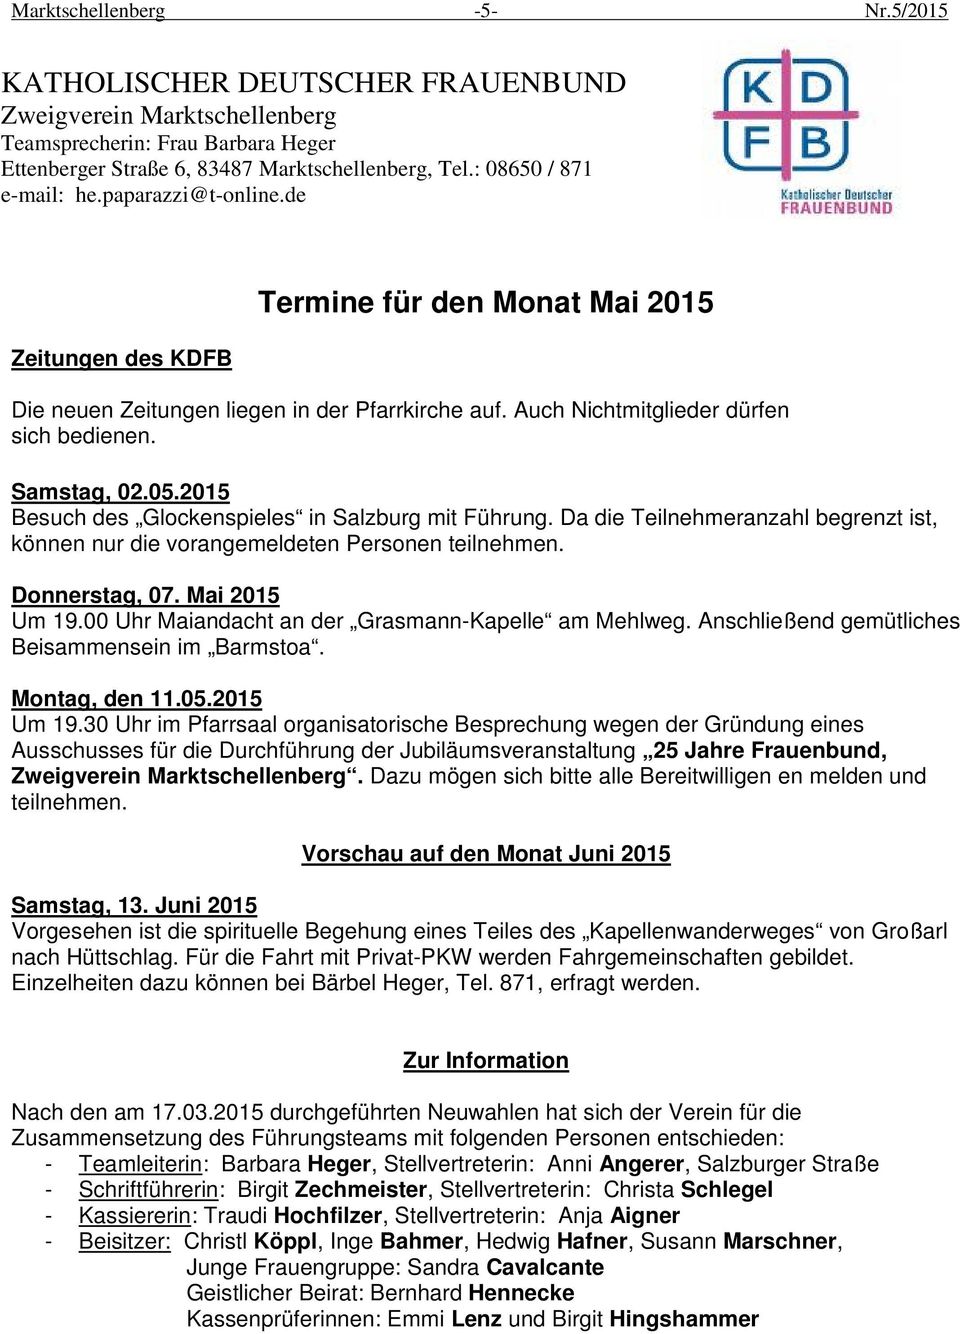 Samstag, 02.05.2015 Besuch des Glockenspieles in Salzburg mit Führung. Da die Teilnehmeranzahl begrenzt ist, können nur die vorangemeldeten Personen teilnehmen. Donnerstag, 07. Mai 2015 Um 19.